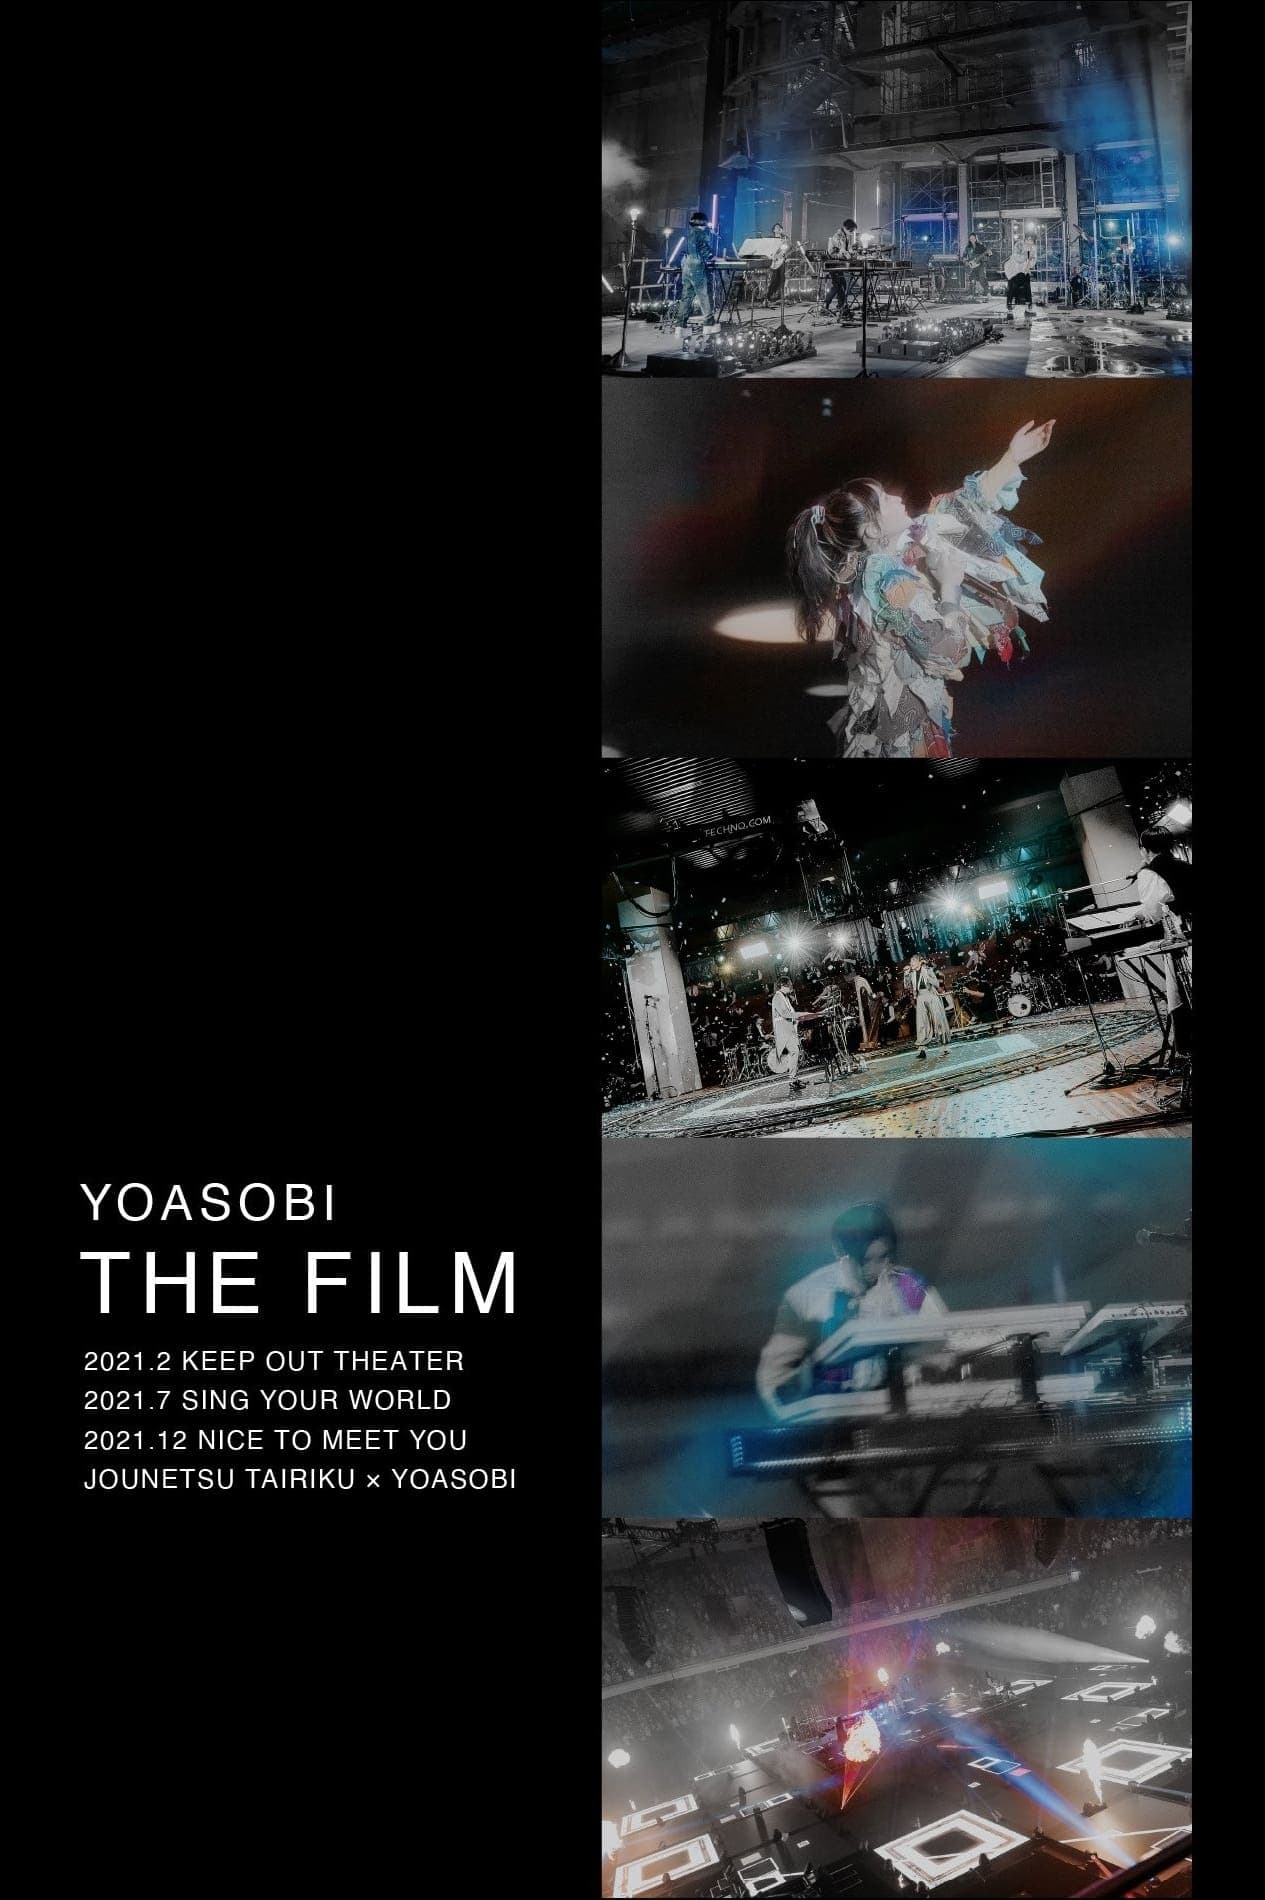 YOASOBI - THE FILM